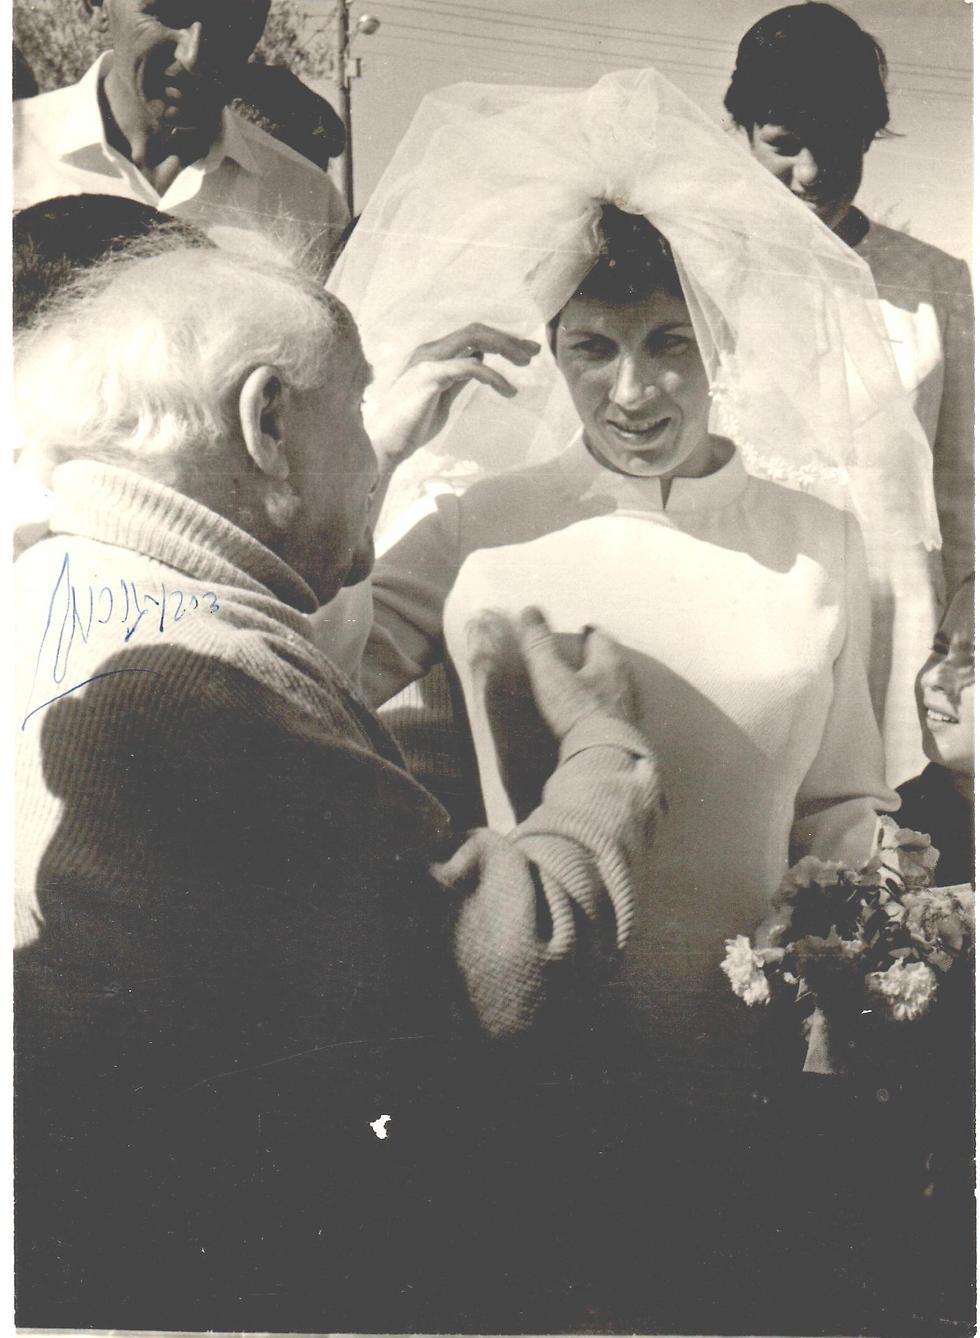 "הוא היה בא לכל החתונות בקיבוץ", בן גוריון בחתונה ב-68' (צילום: שלמה קוגל) (צילום: שלמה קוגל)